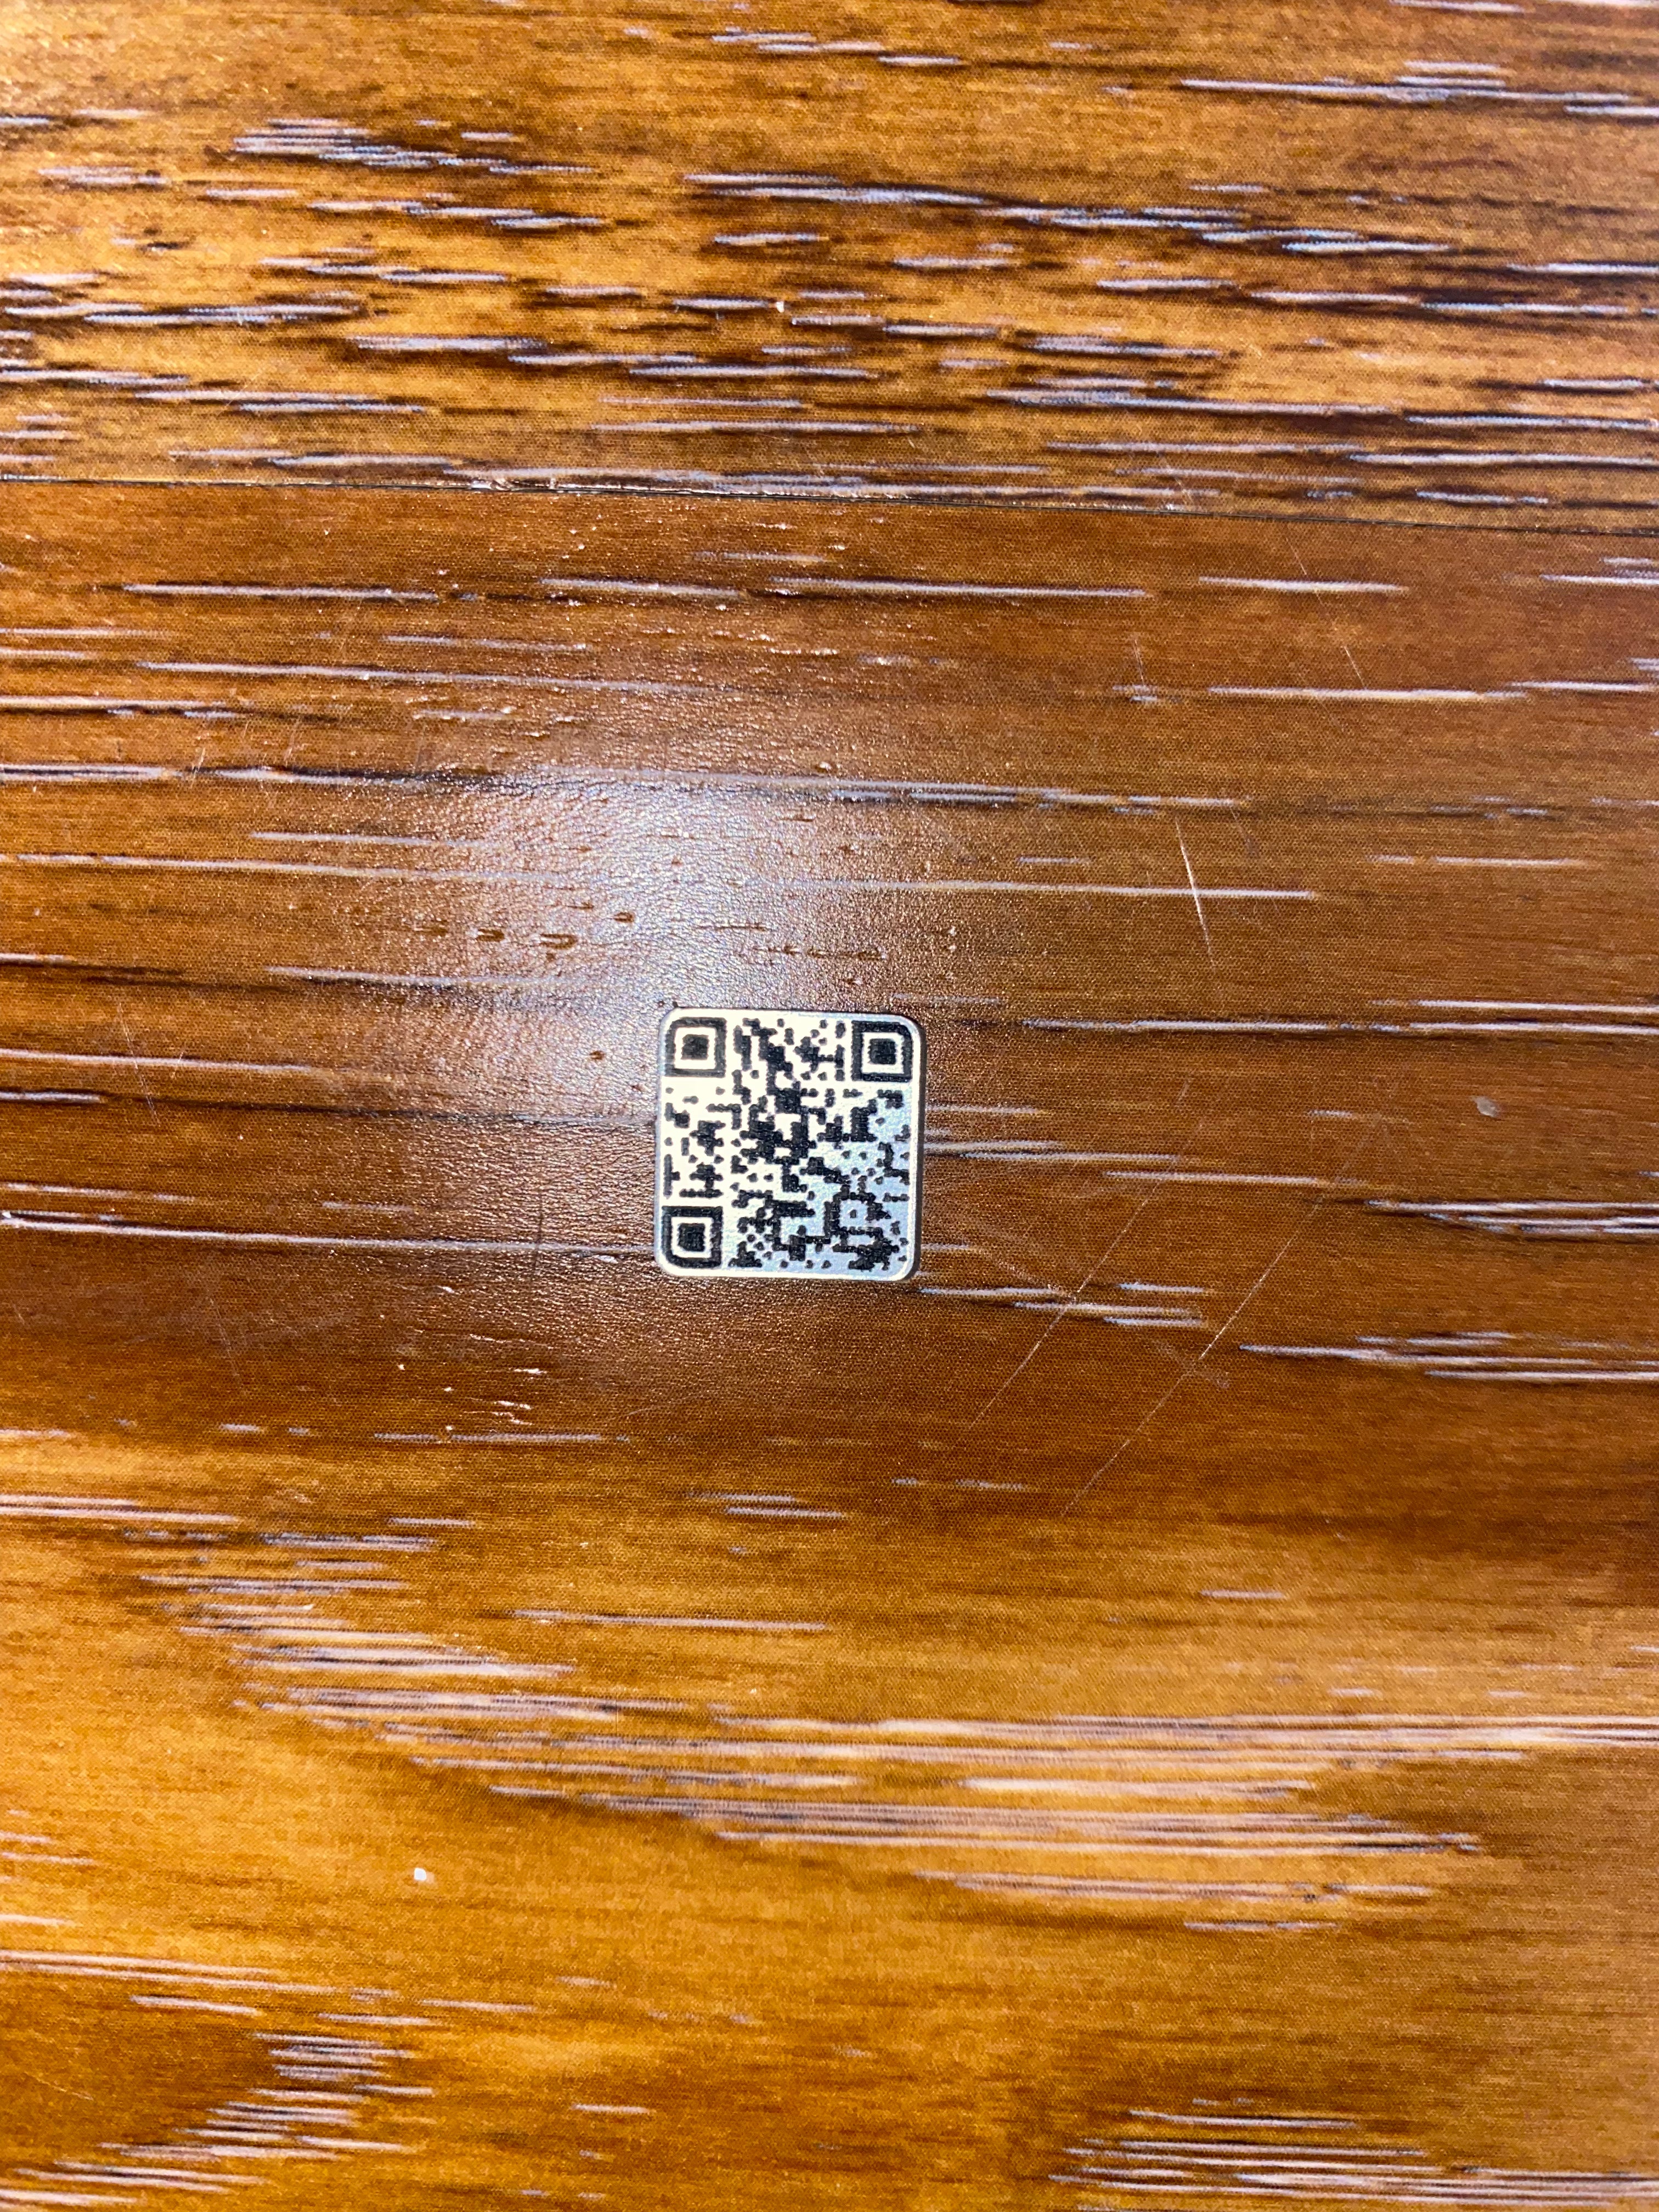 Mini QR Code